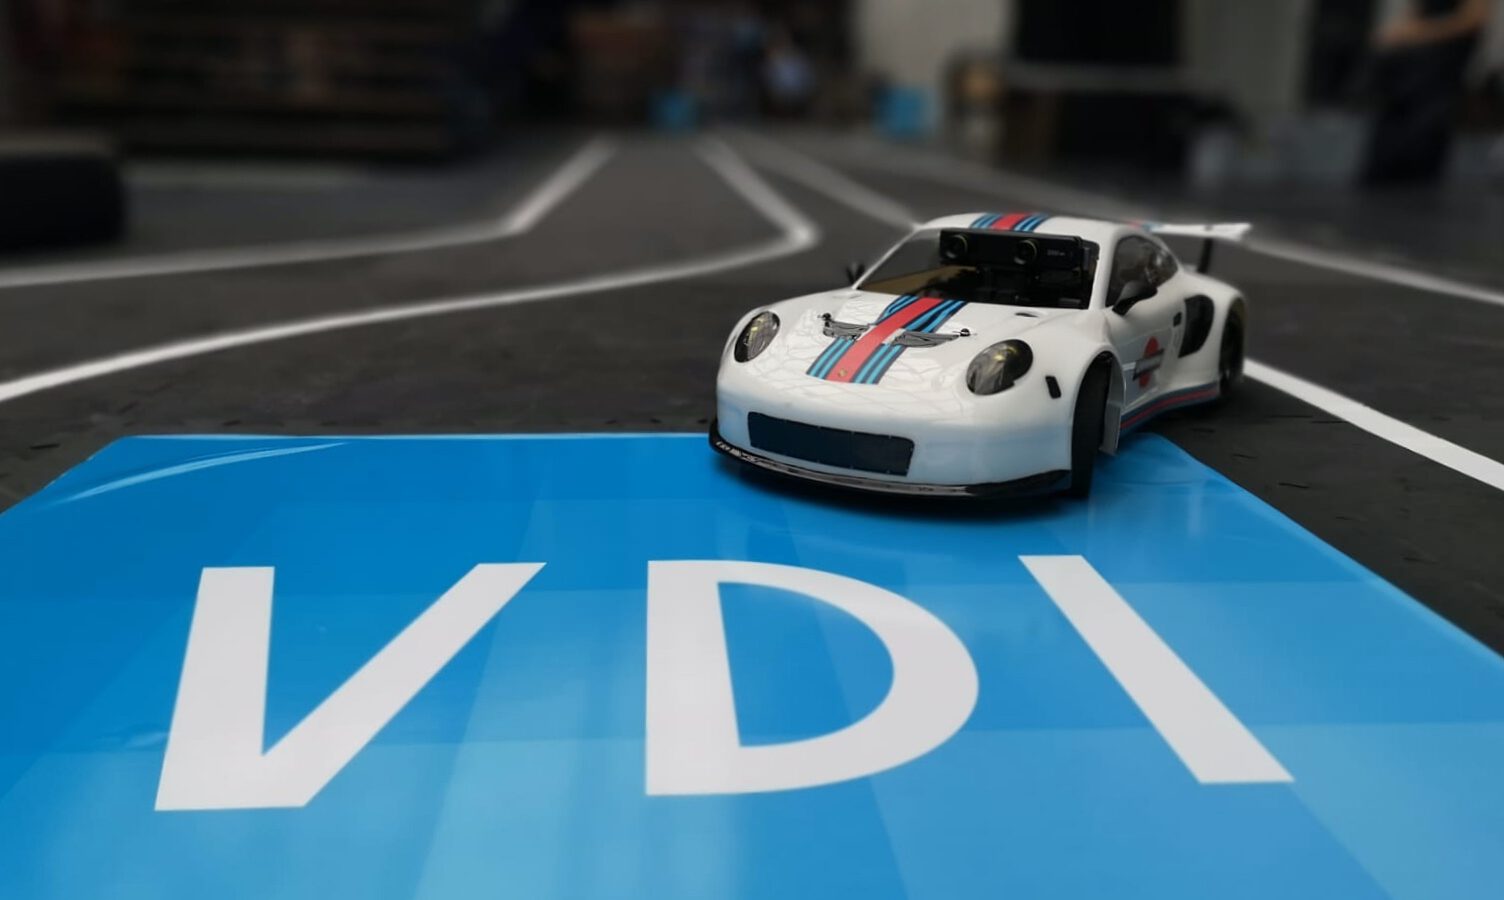 MX Car Kits VDI Autonomous Driving Challenge